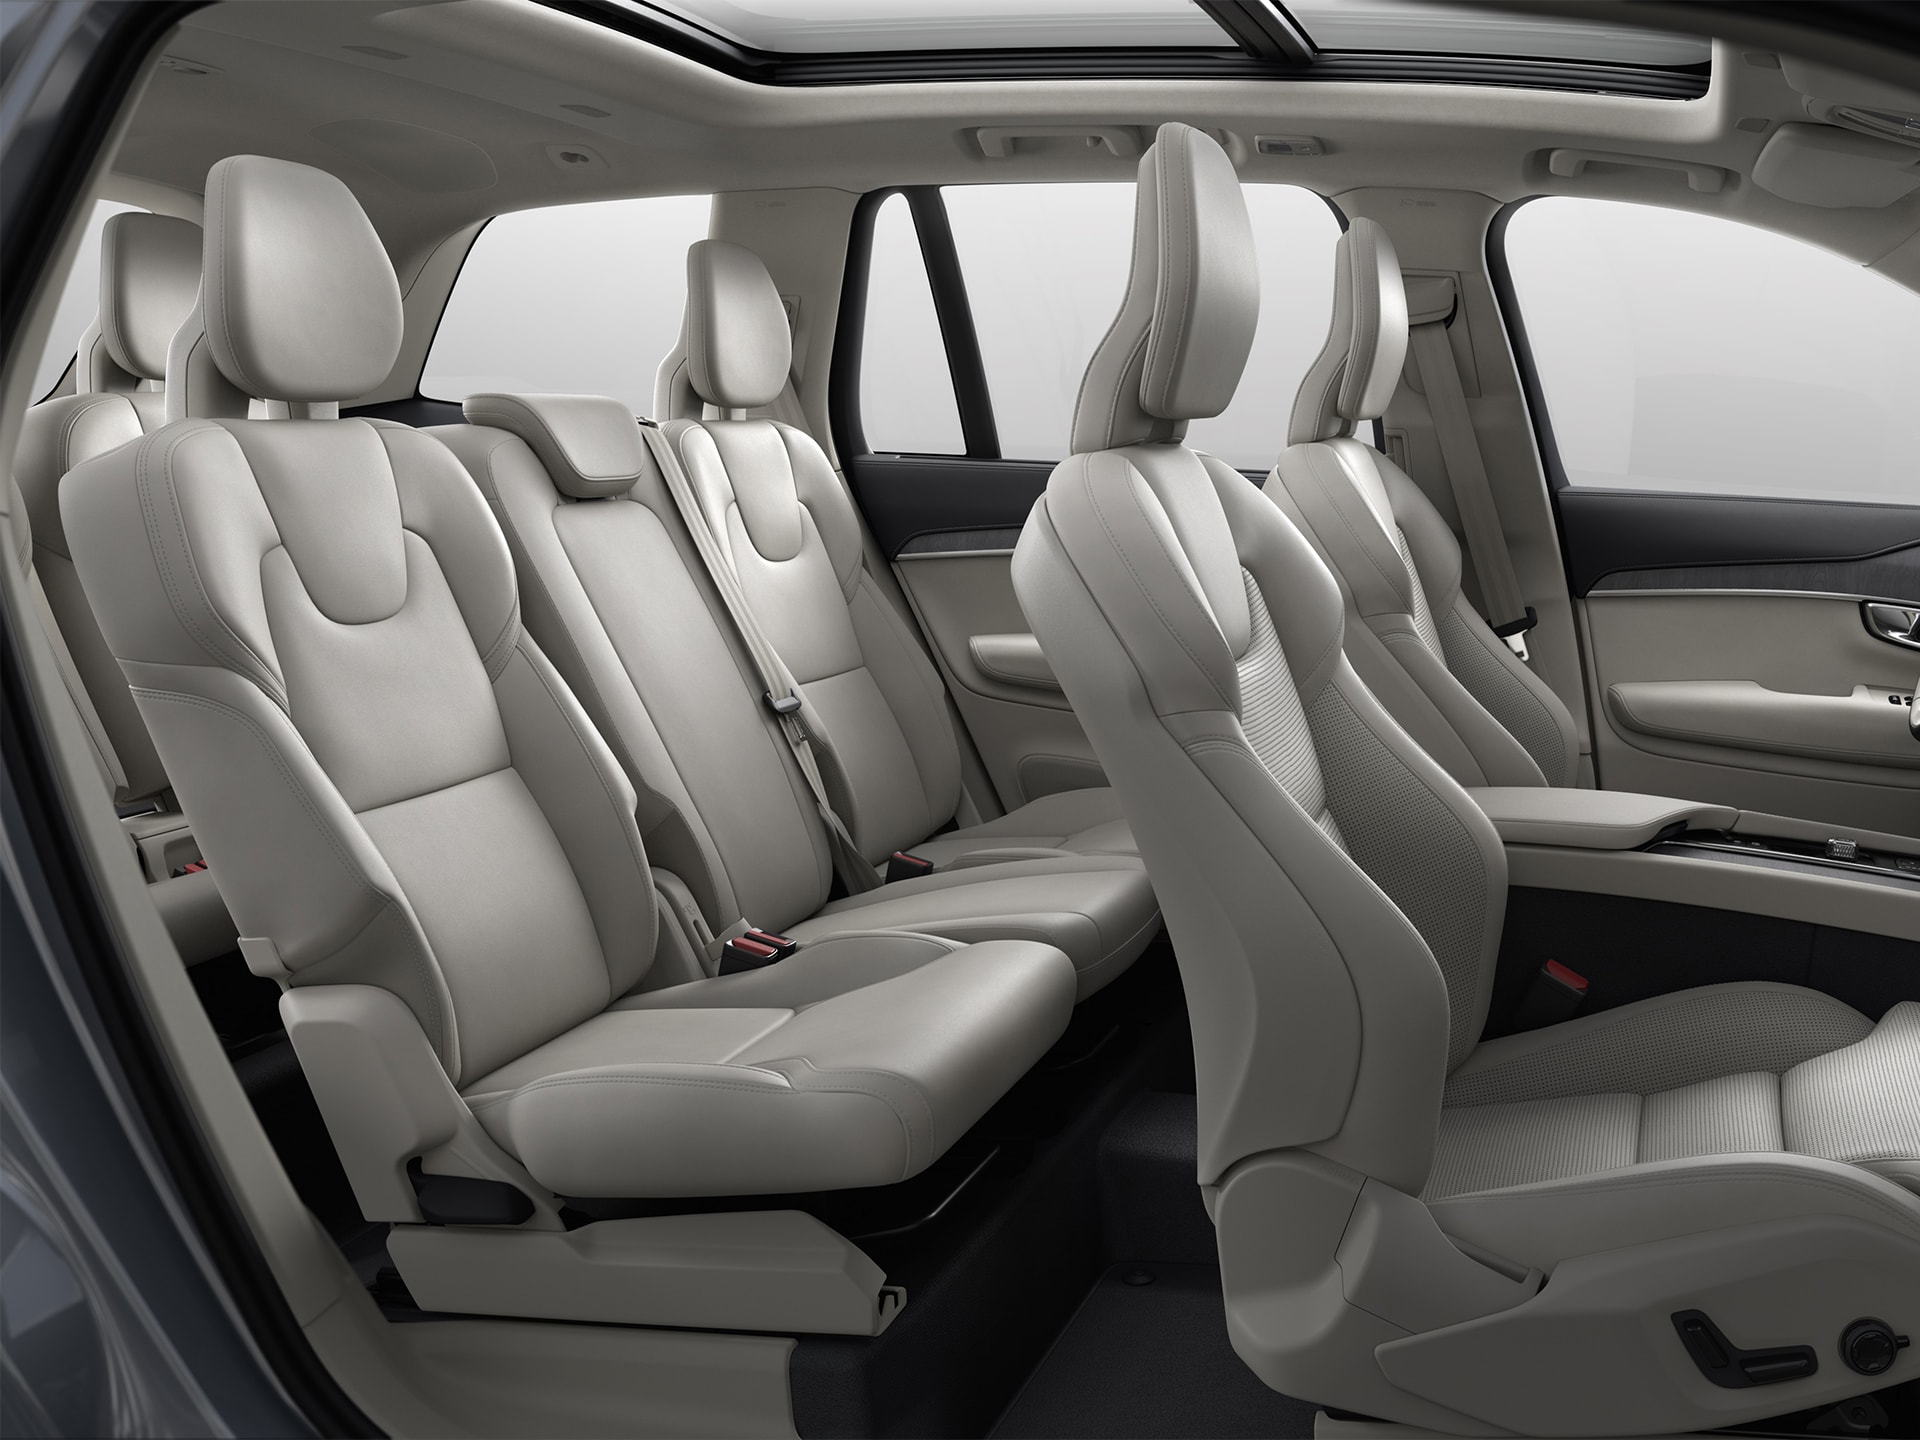 沃尔沃 XC90 SUV 驾驶舱内部空间宽敞舒适。